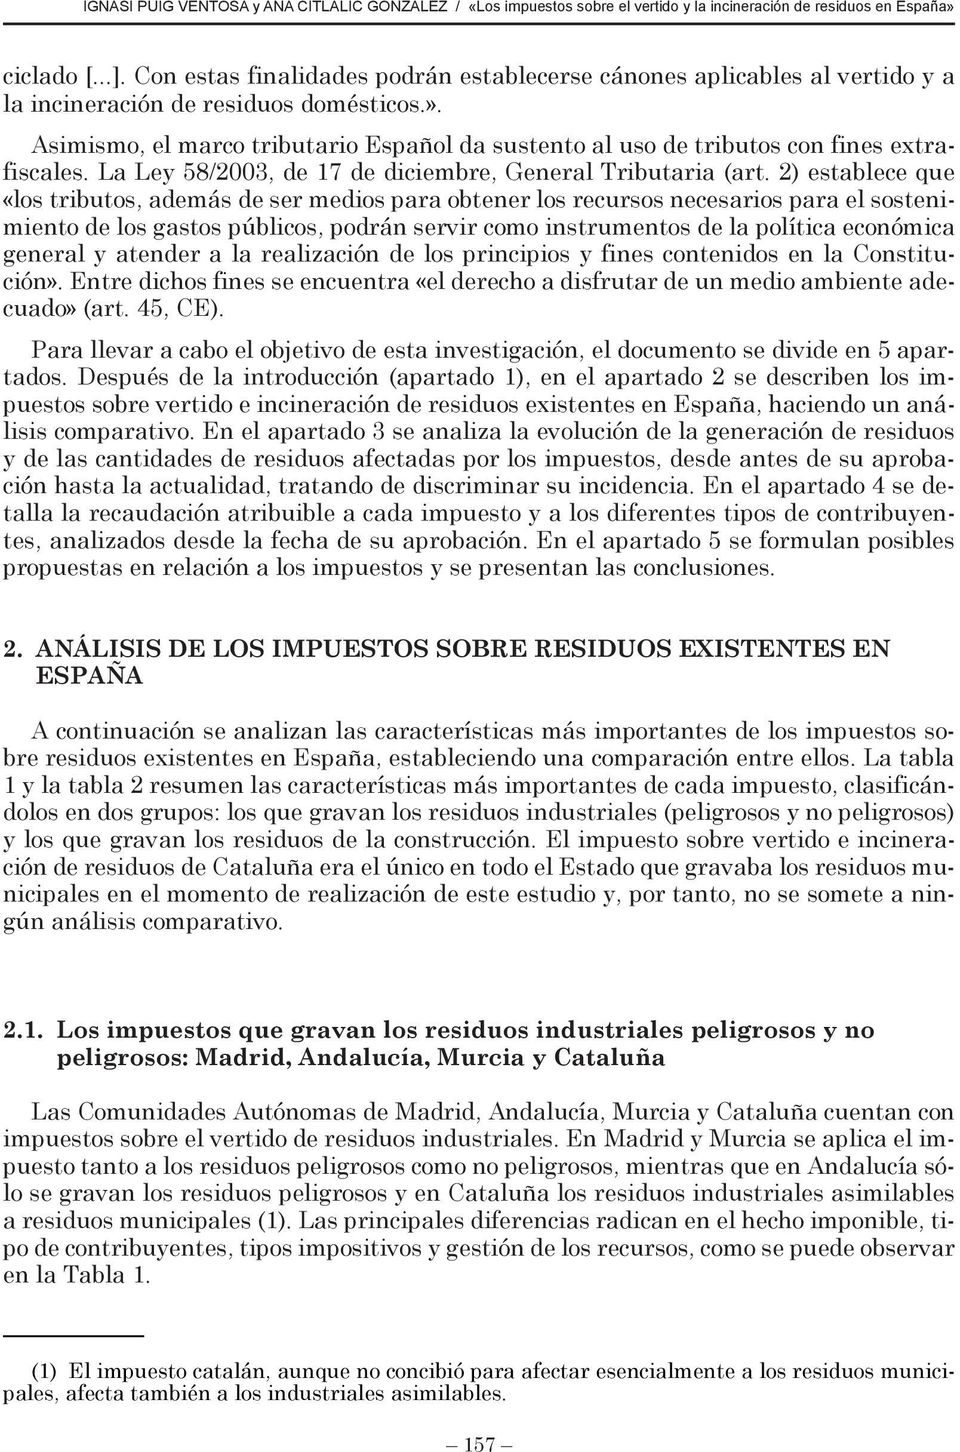 Asimismo, el marco tributario Español da sustento al uso de tributos con fines extrafiscales. La Ley 58/2003, de 17 de diciembre, General Tributaria (art.